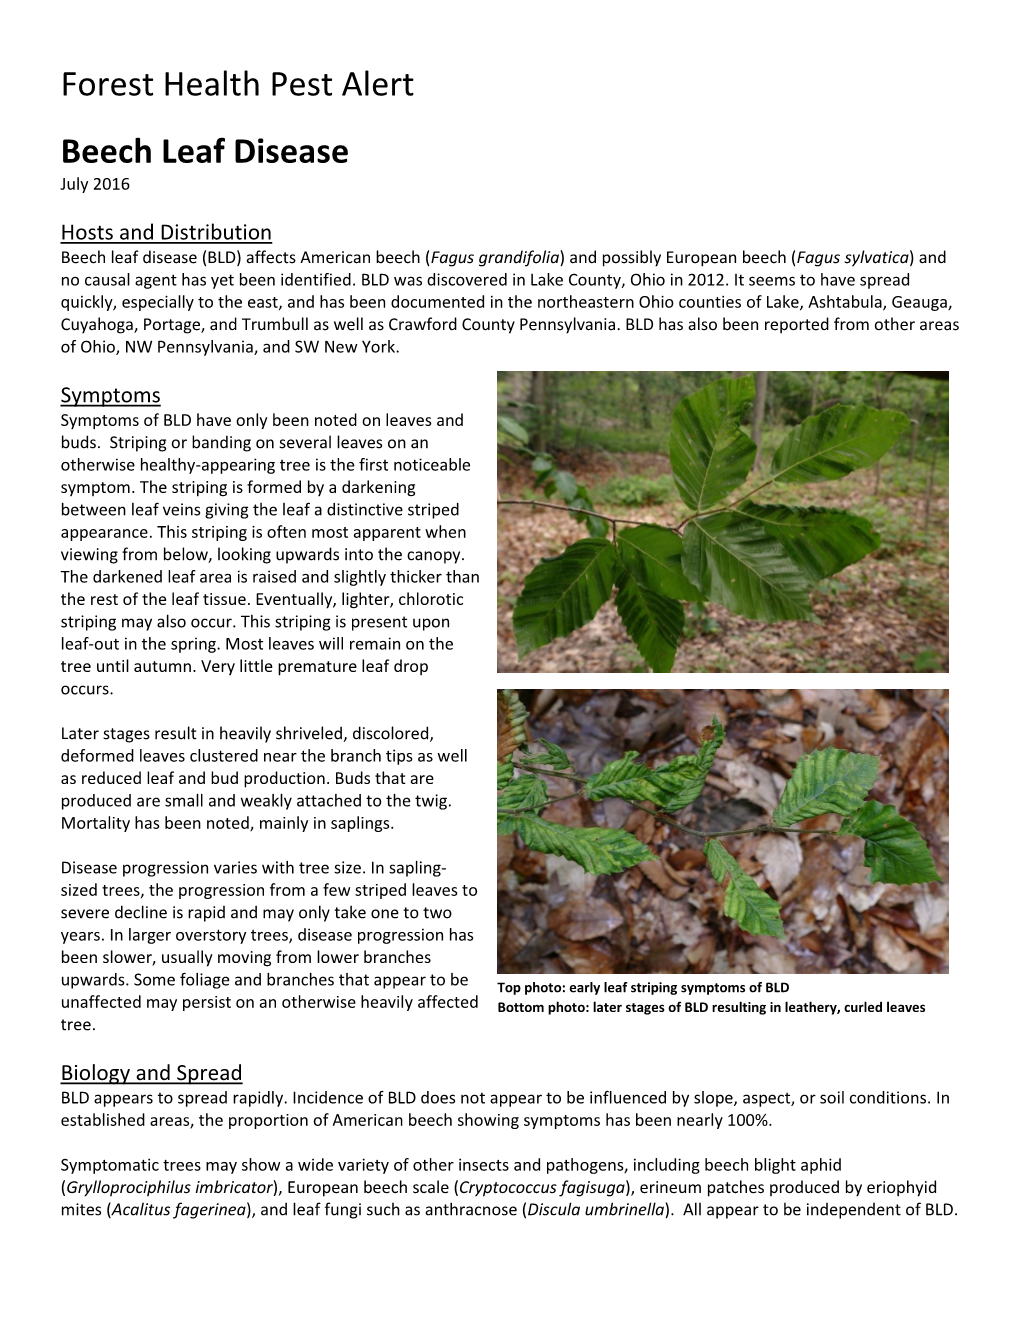 Beech Leaf Disease July 2016